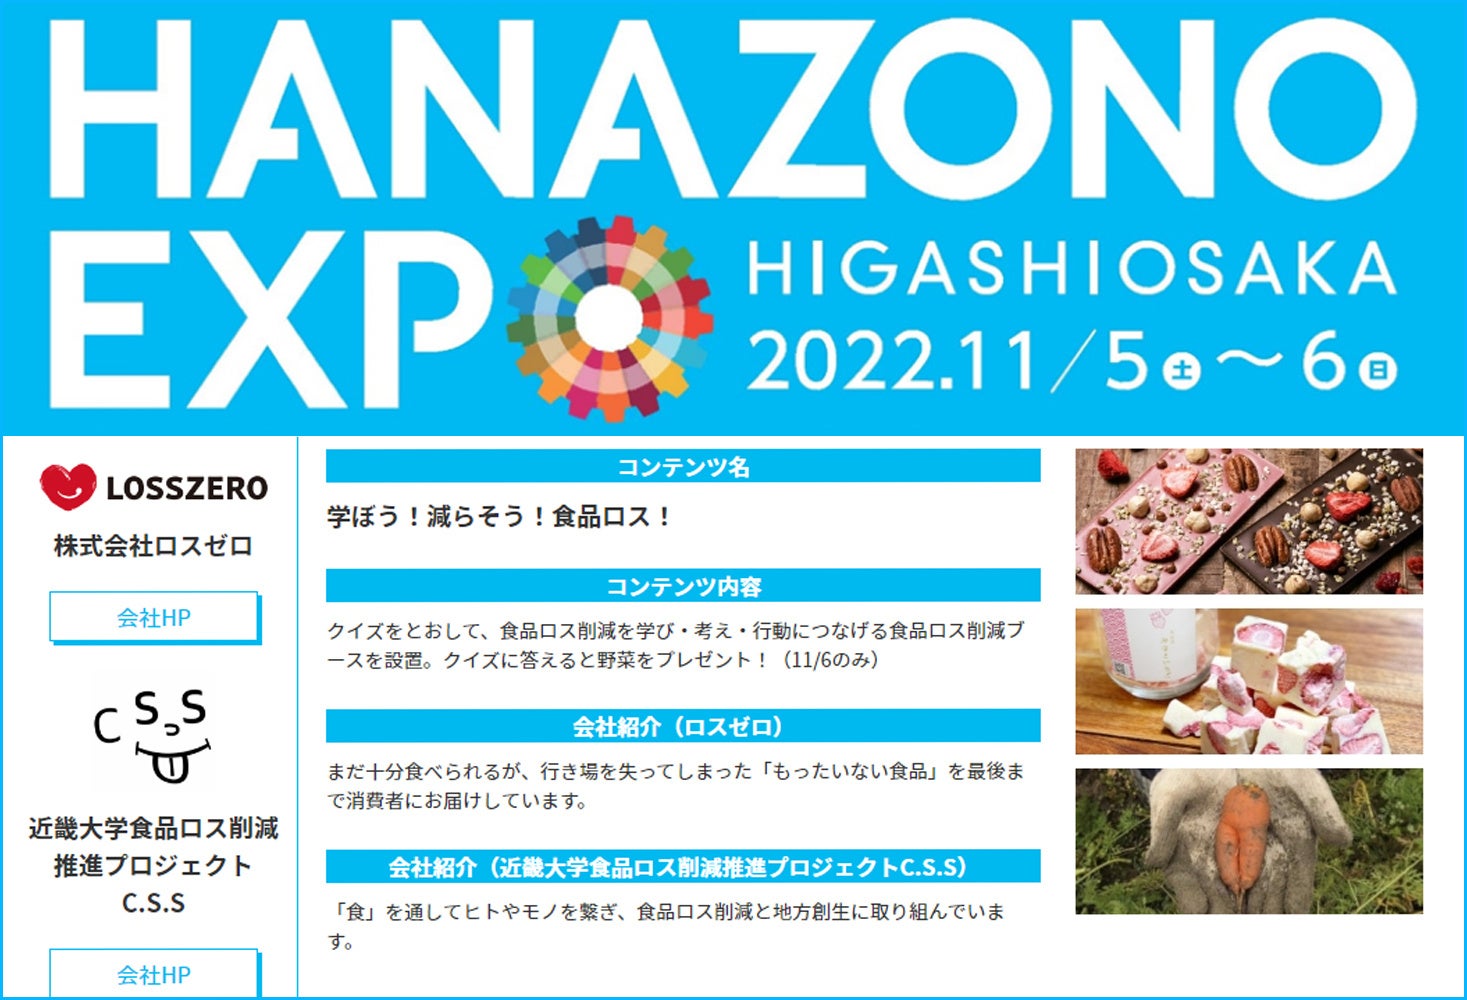 東大阪市が開催する大阪・関西万博チャレンジに、ロスゼロが食品ロス削減ブースを出展　11月6日(日)